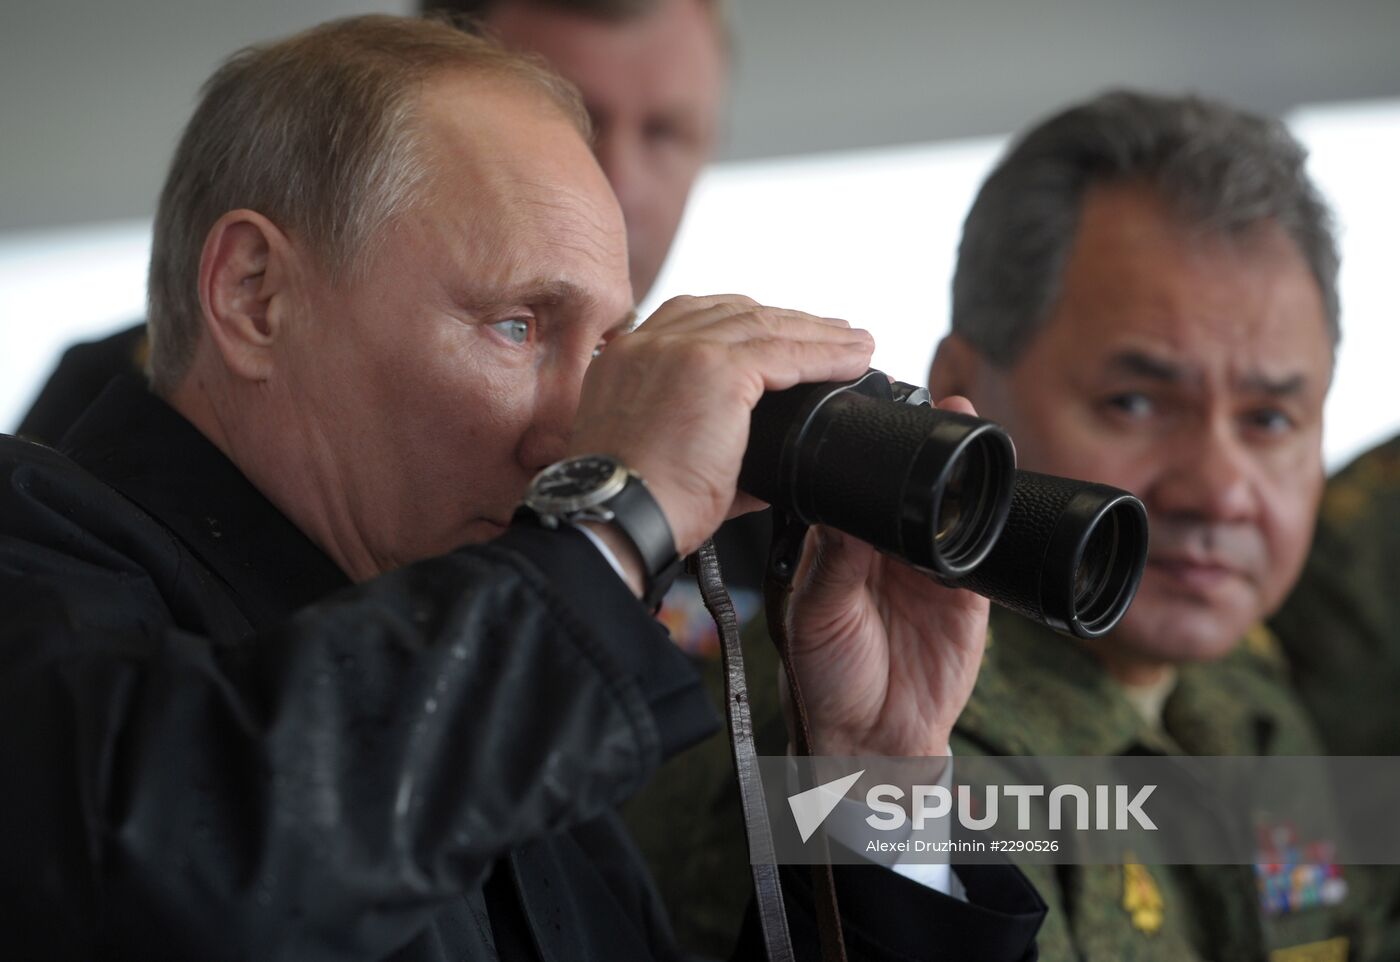 Vladimir Putin visits Kaliningrad Region